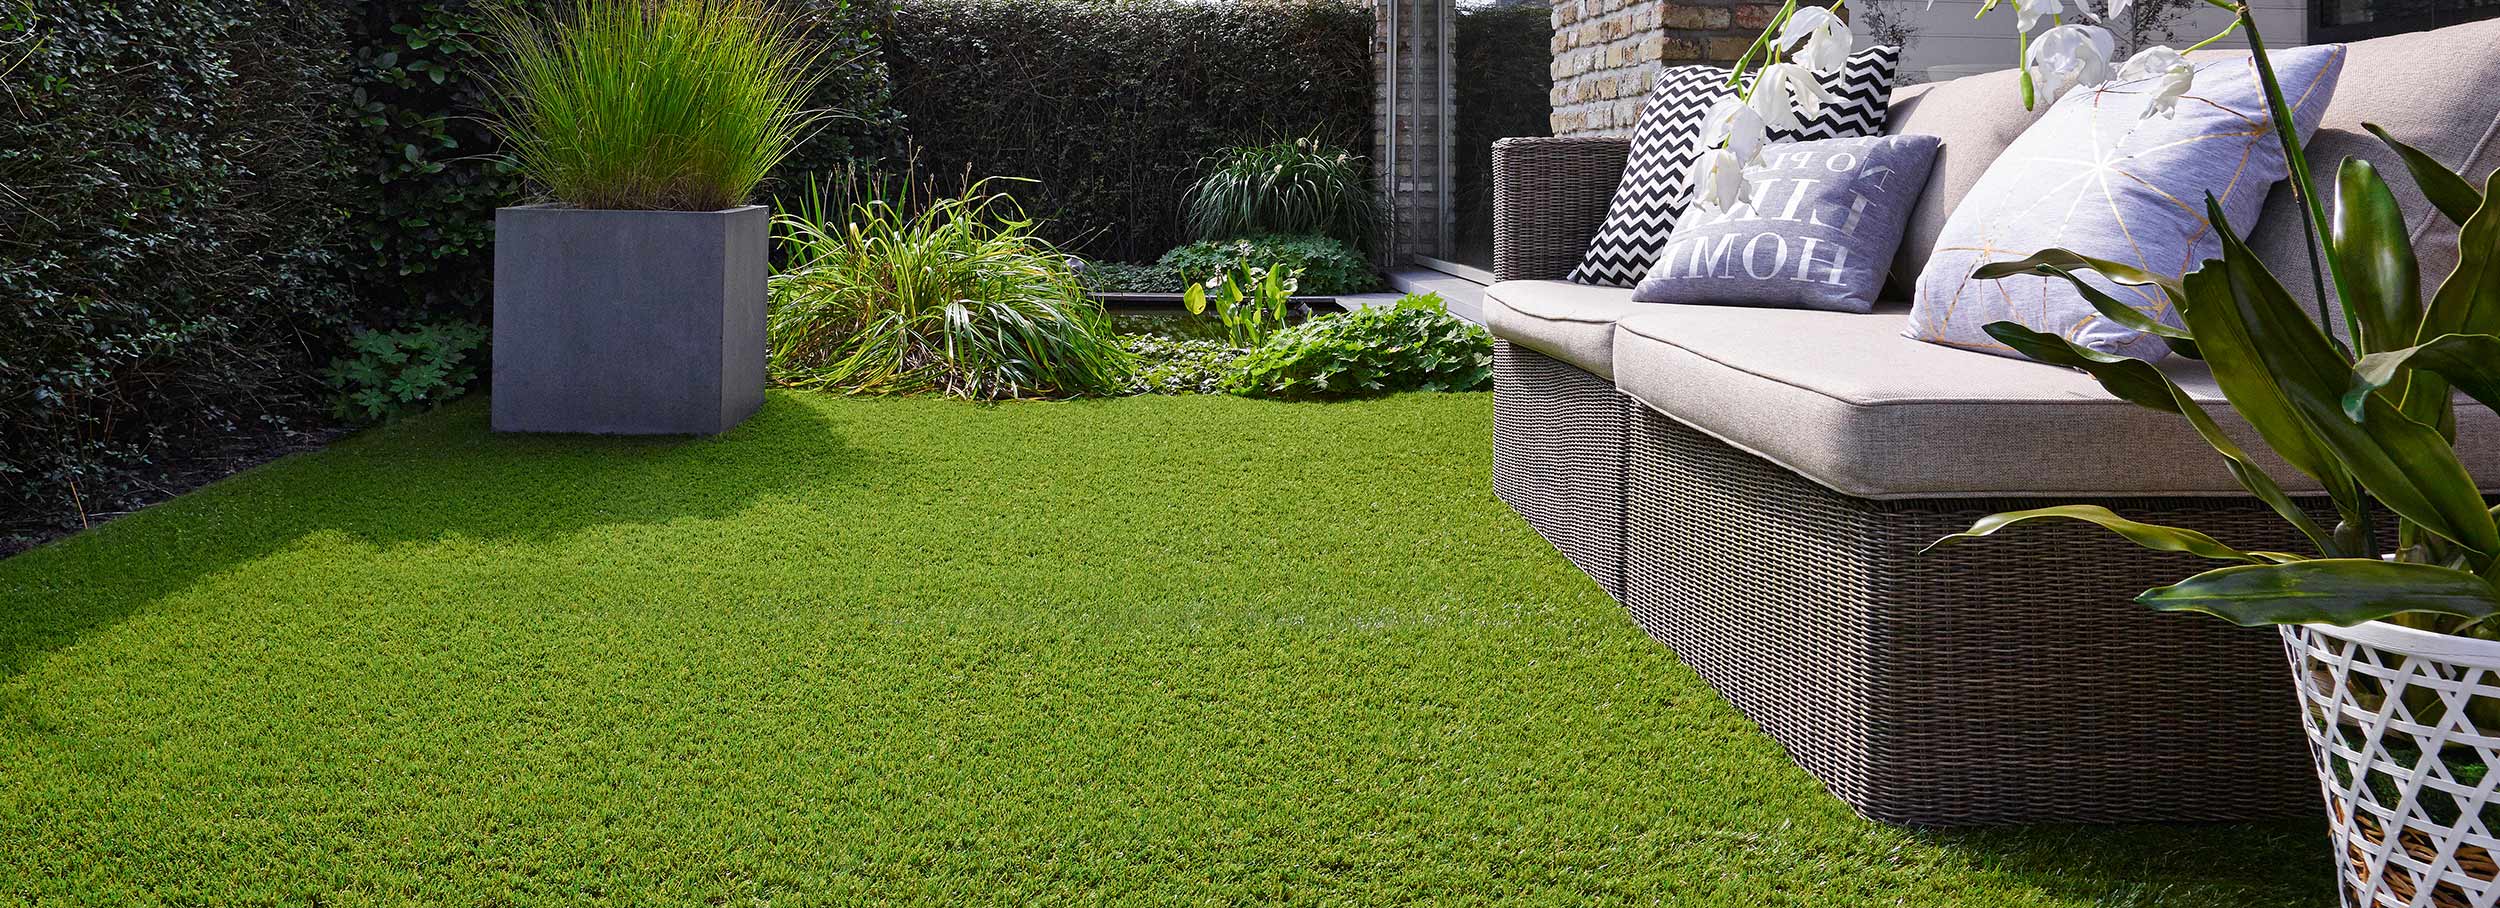 Grass247 | Buy Artificial Grass | Cheap Fake Grass | Luxury AstroTurf